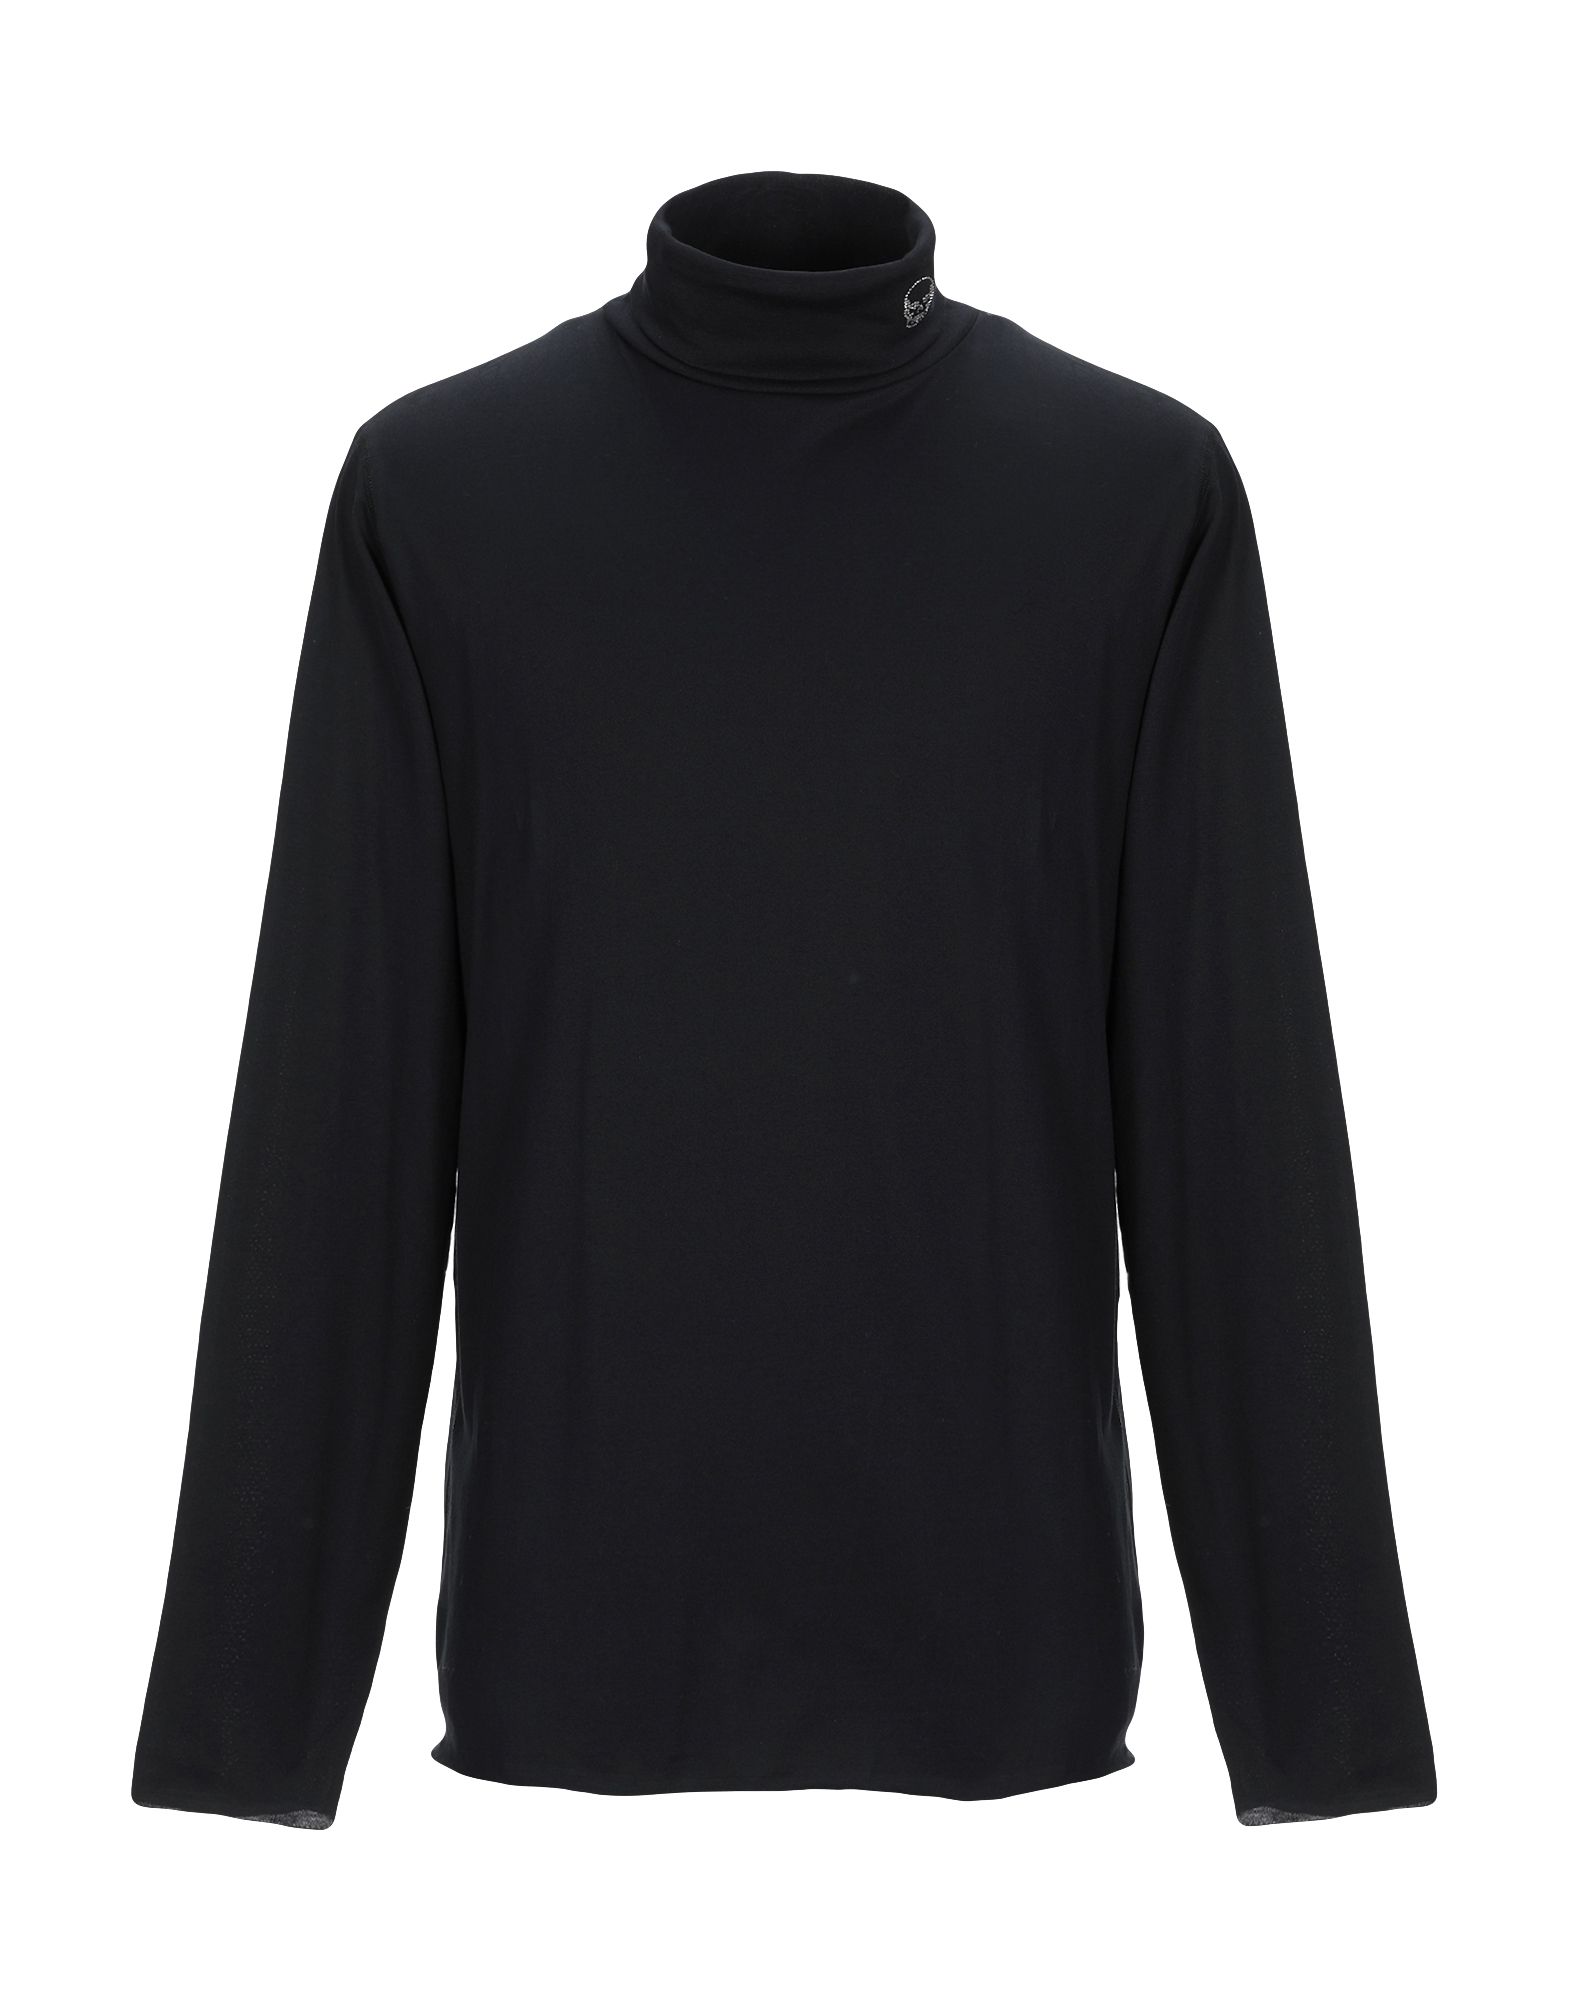 ルシアン・ペラフィネ(Lucien pellat-finet) メンズTシャツ・カットソー | 通販・人気ランキング - 価格.com